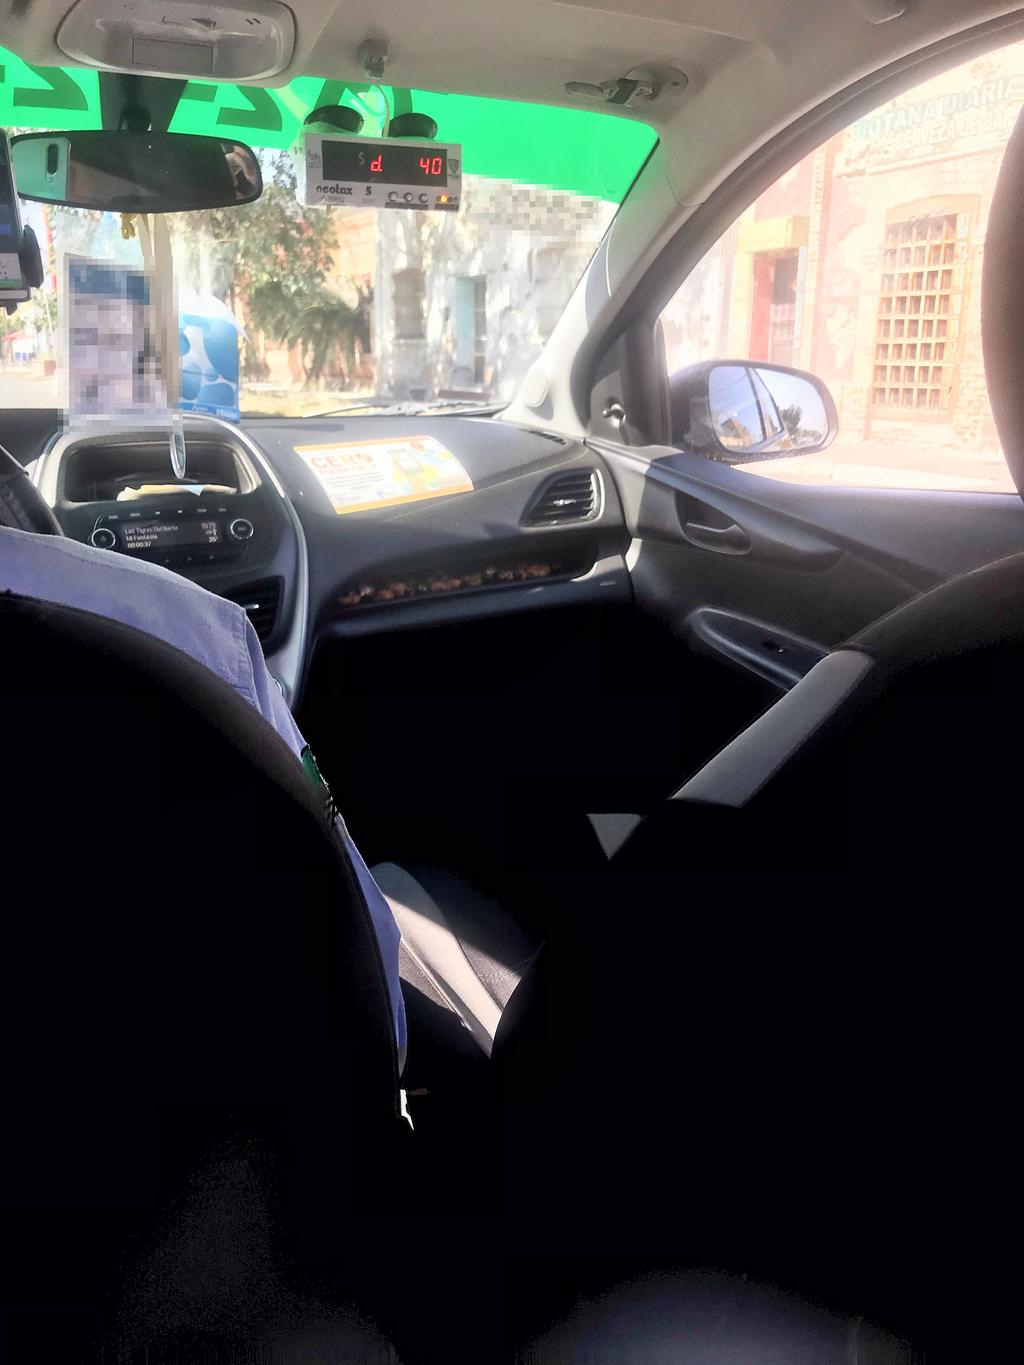 Los taxis portan su debida identificación y buscan ser la competencia a través de plataformas digitales de Uber y otras. (FERNANDO GONZÁLEZ)